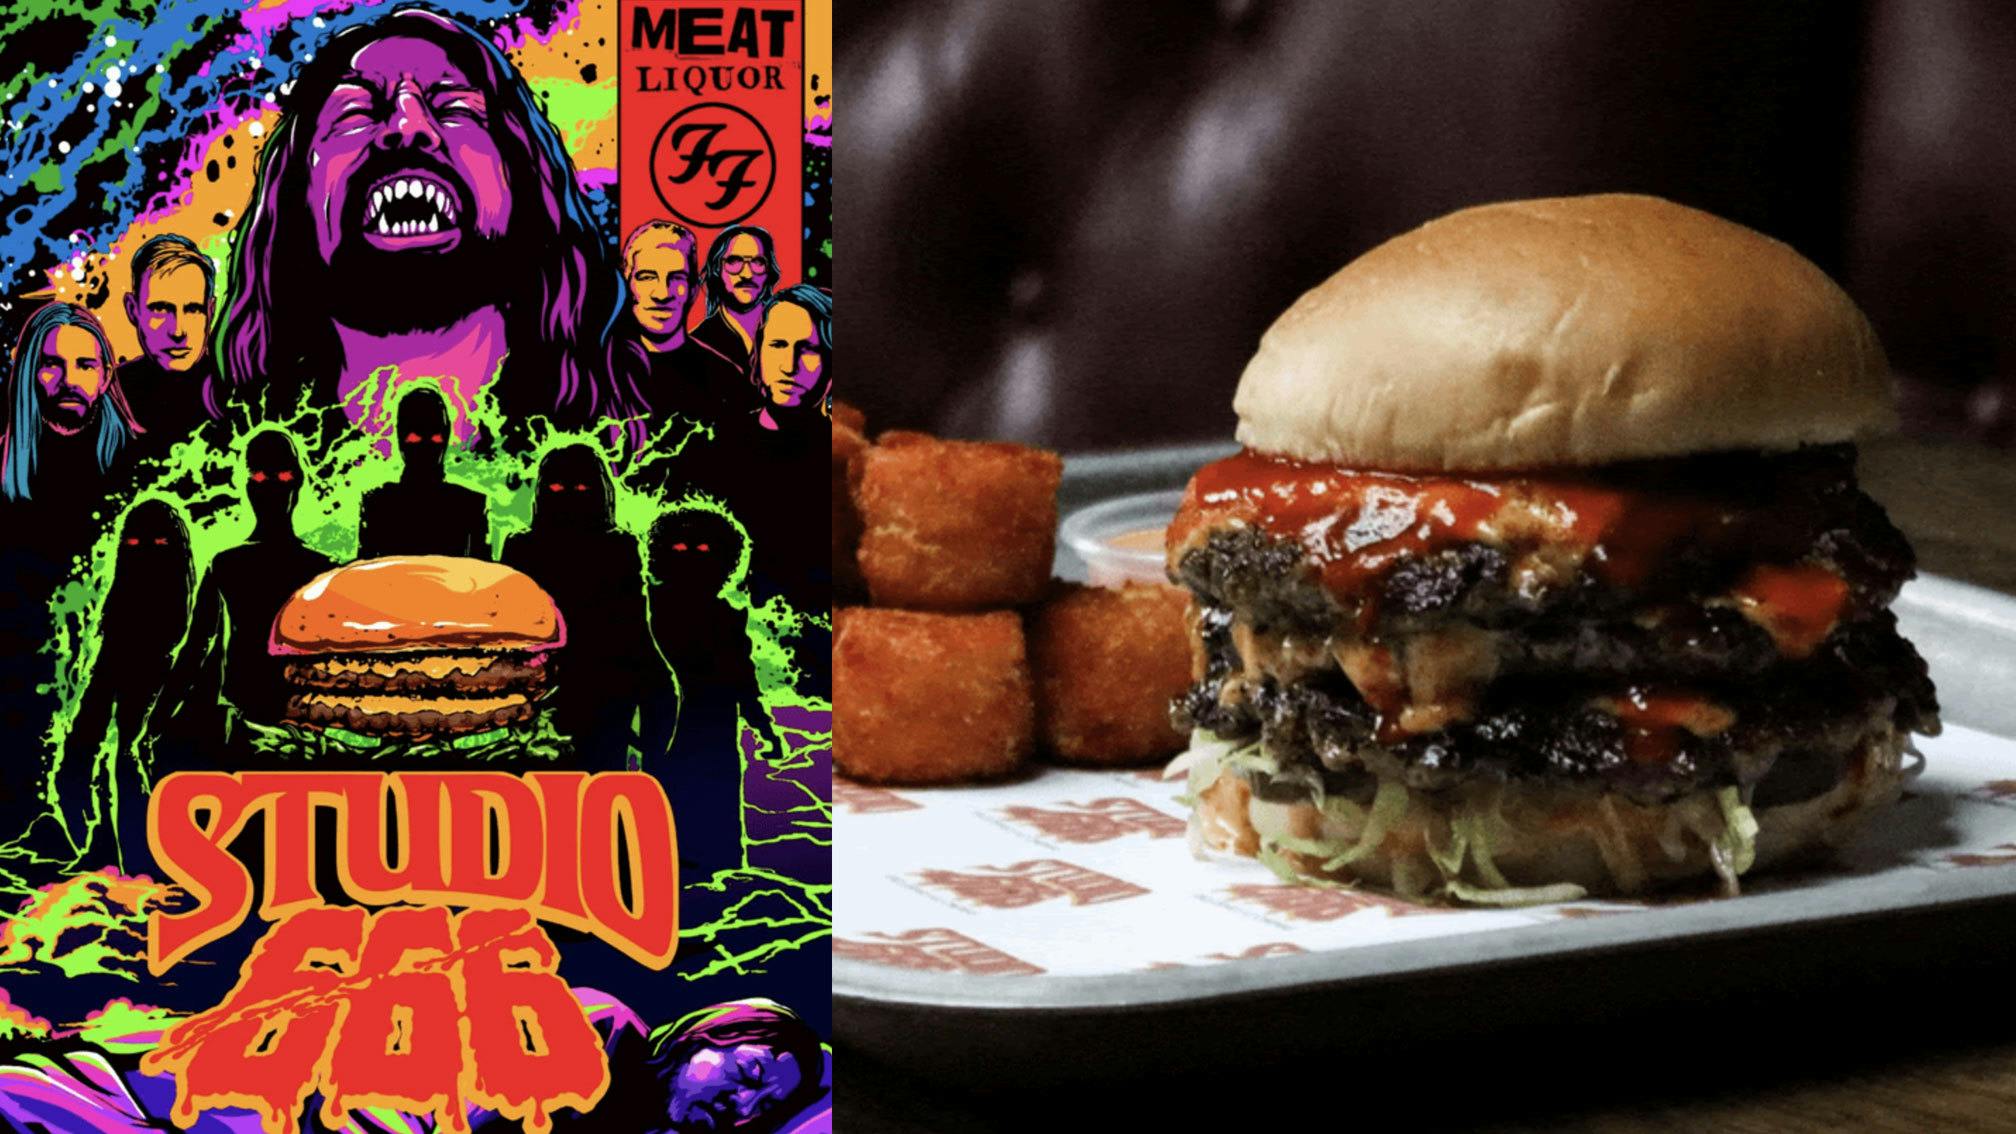 MEATliquor unveil epic Studio 666 burger in collaboration with Foos’ new movie